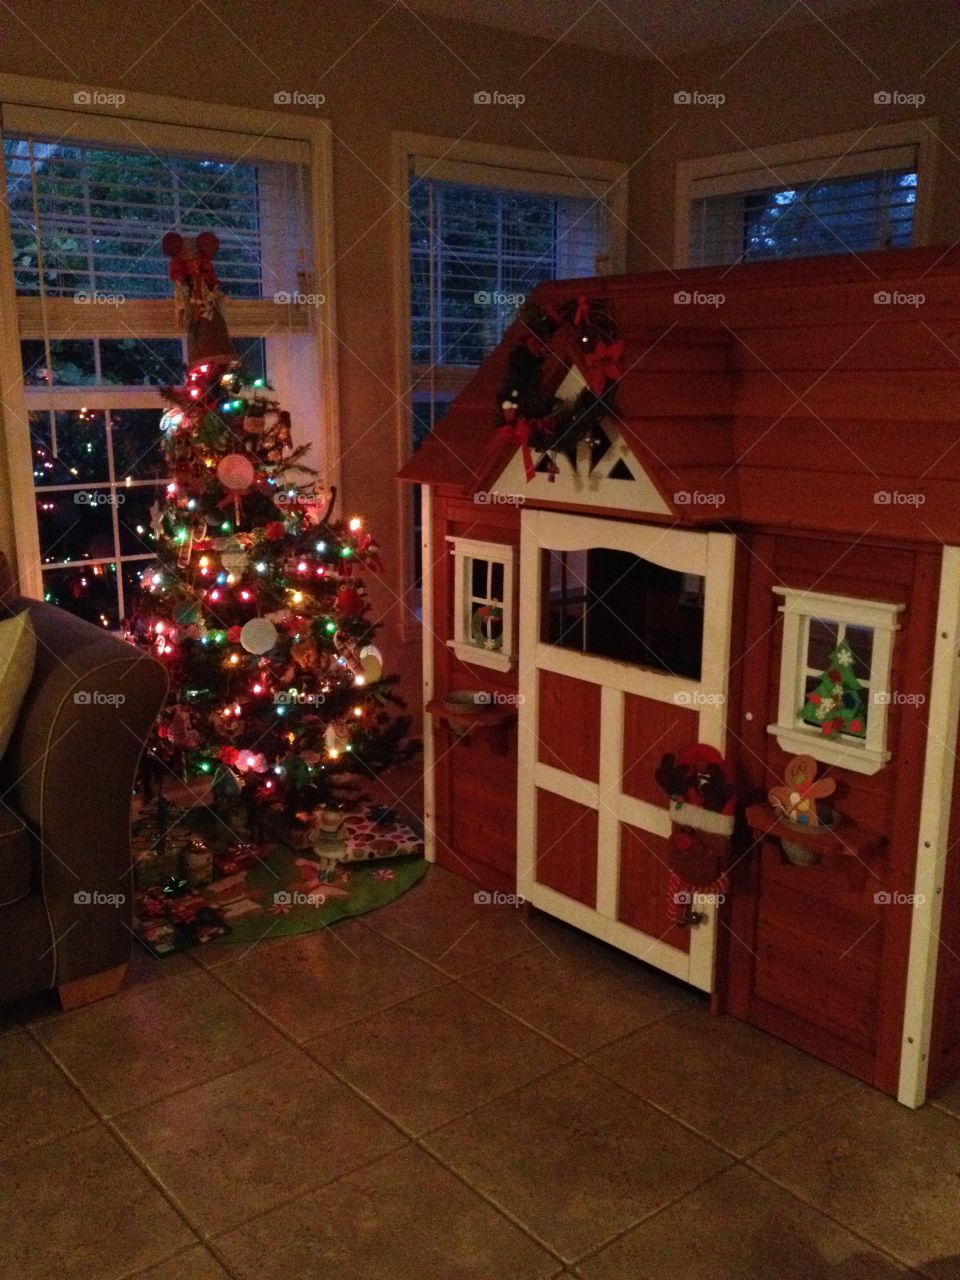 A Child's Christmas Playroom